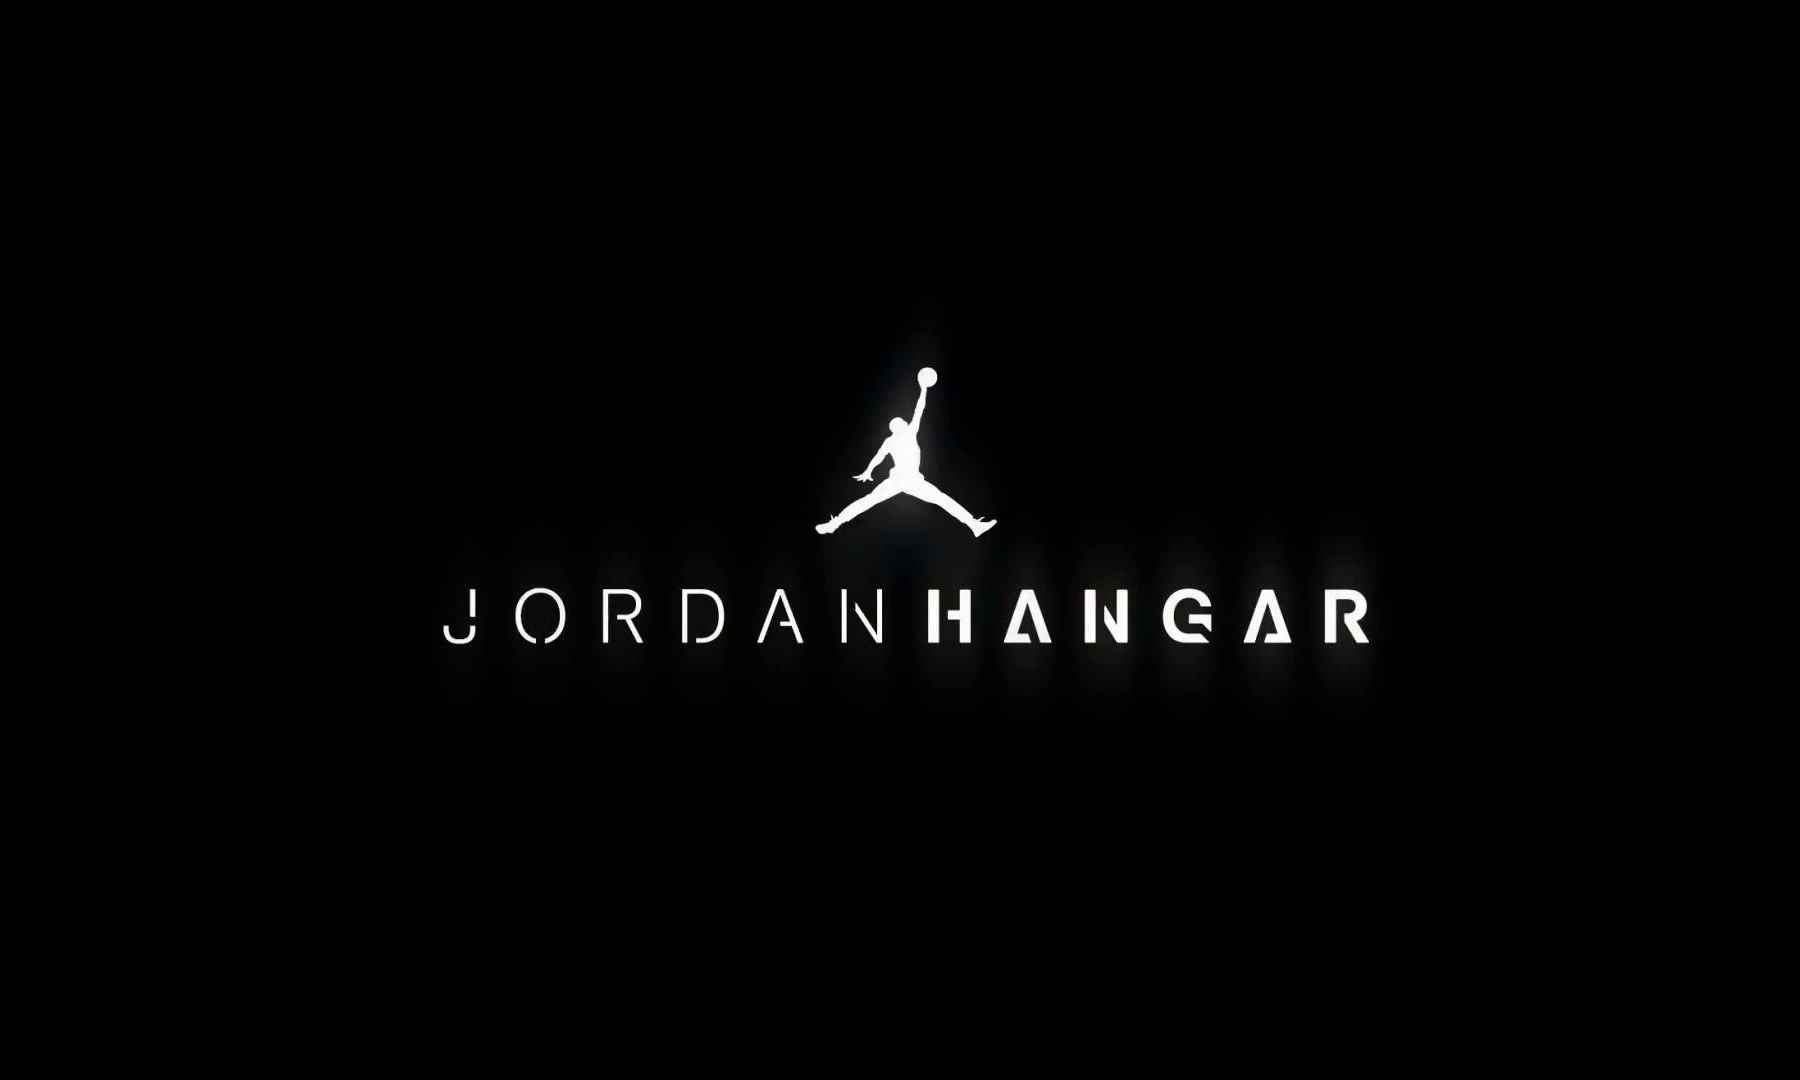 Jordan Hangar 洛杉矶室内篮球场官方视频展示